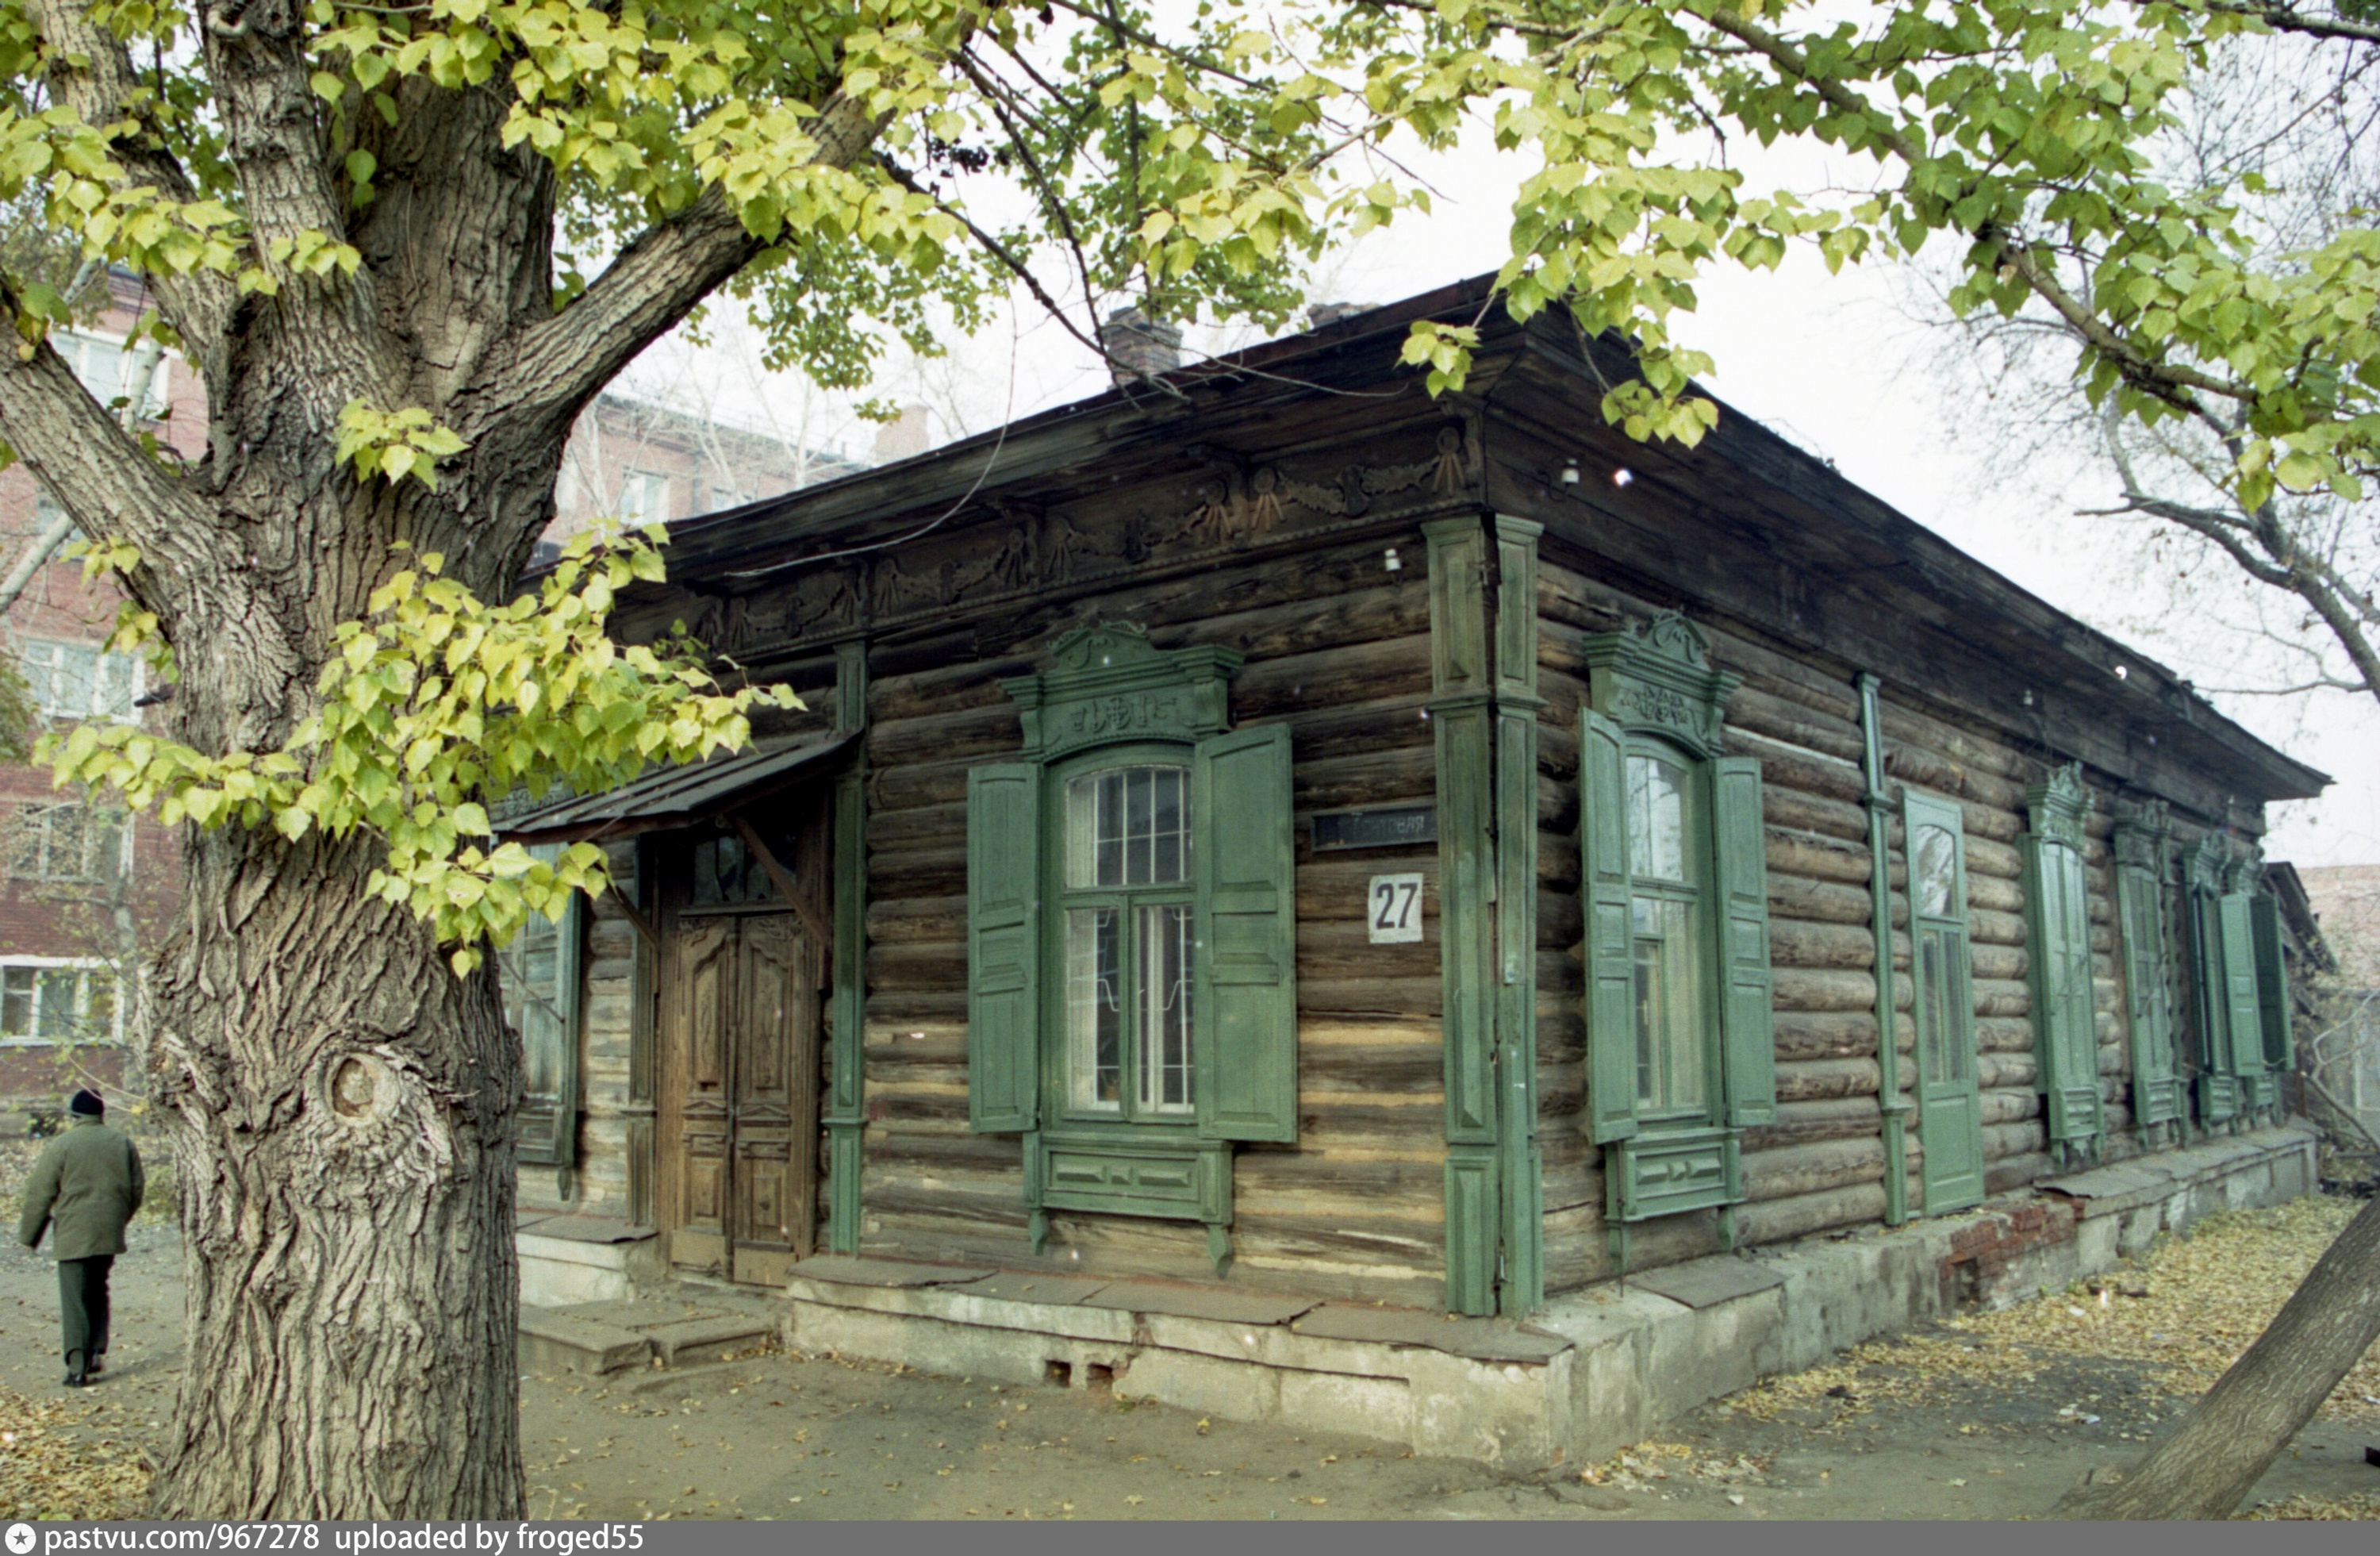 В <nobr class="_">2000 году</nobr> дом Хлебникова выглядел как обычная частная постройка в центре города